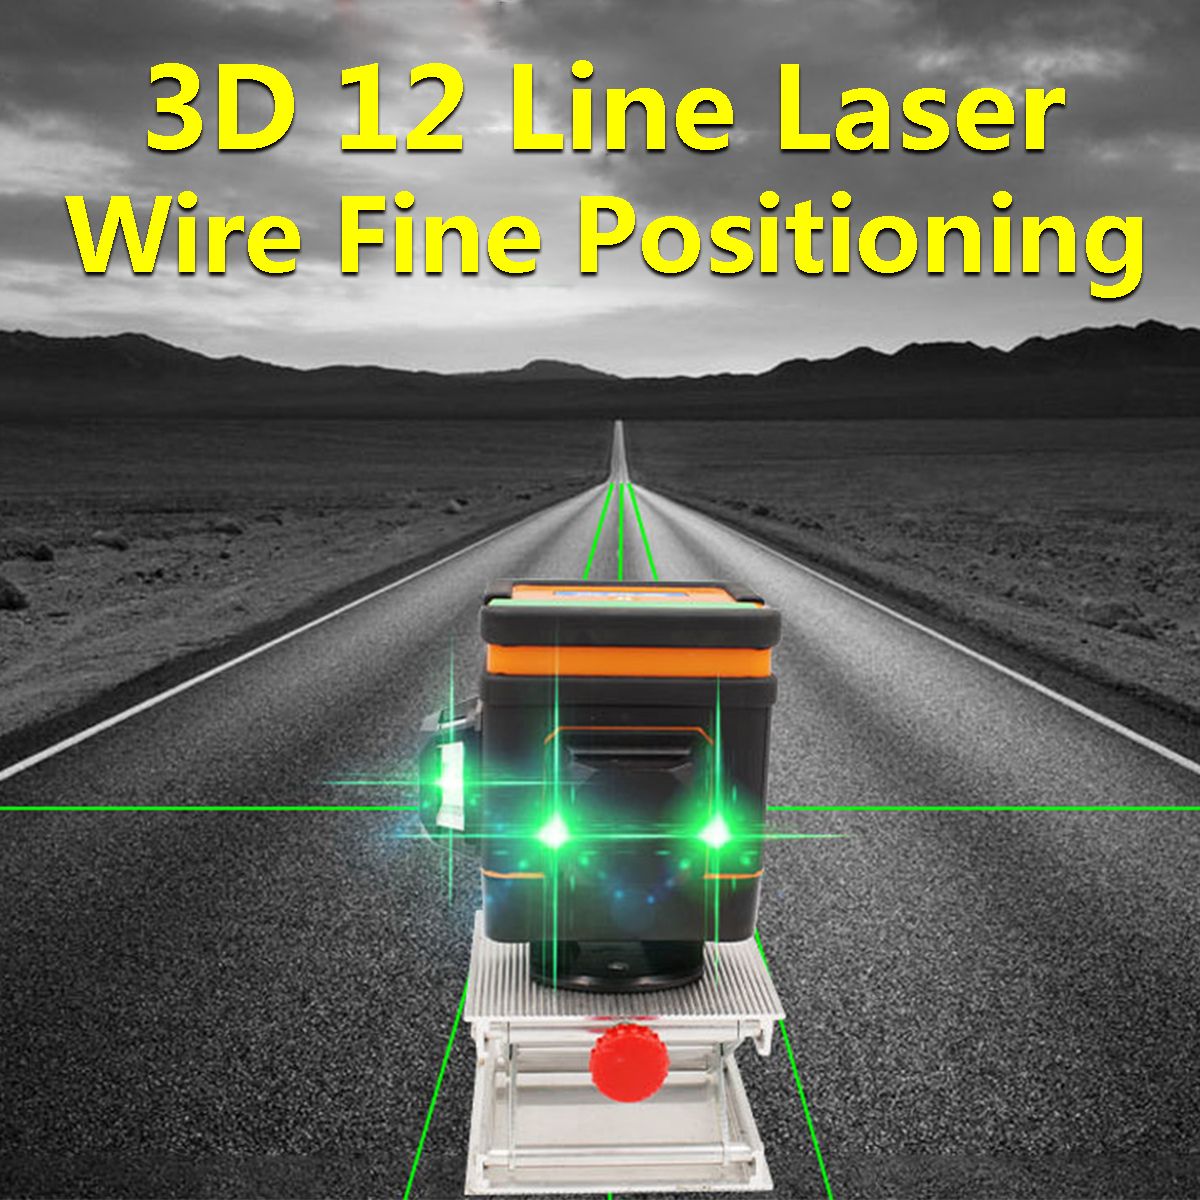 12-Line-Green-Light-Laser-Level-3D-360deg-Level-Self-leveling-RCAPP-Control-Floor-Tile-1469908